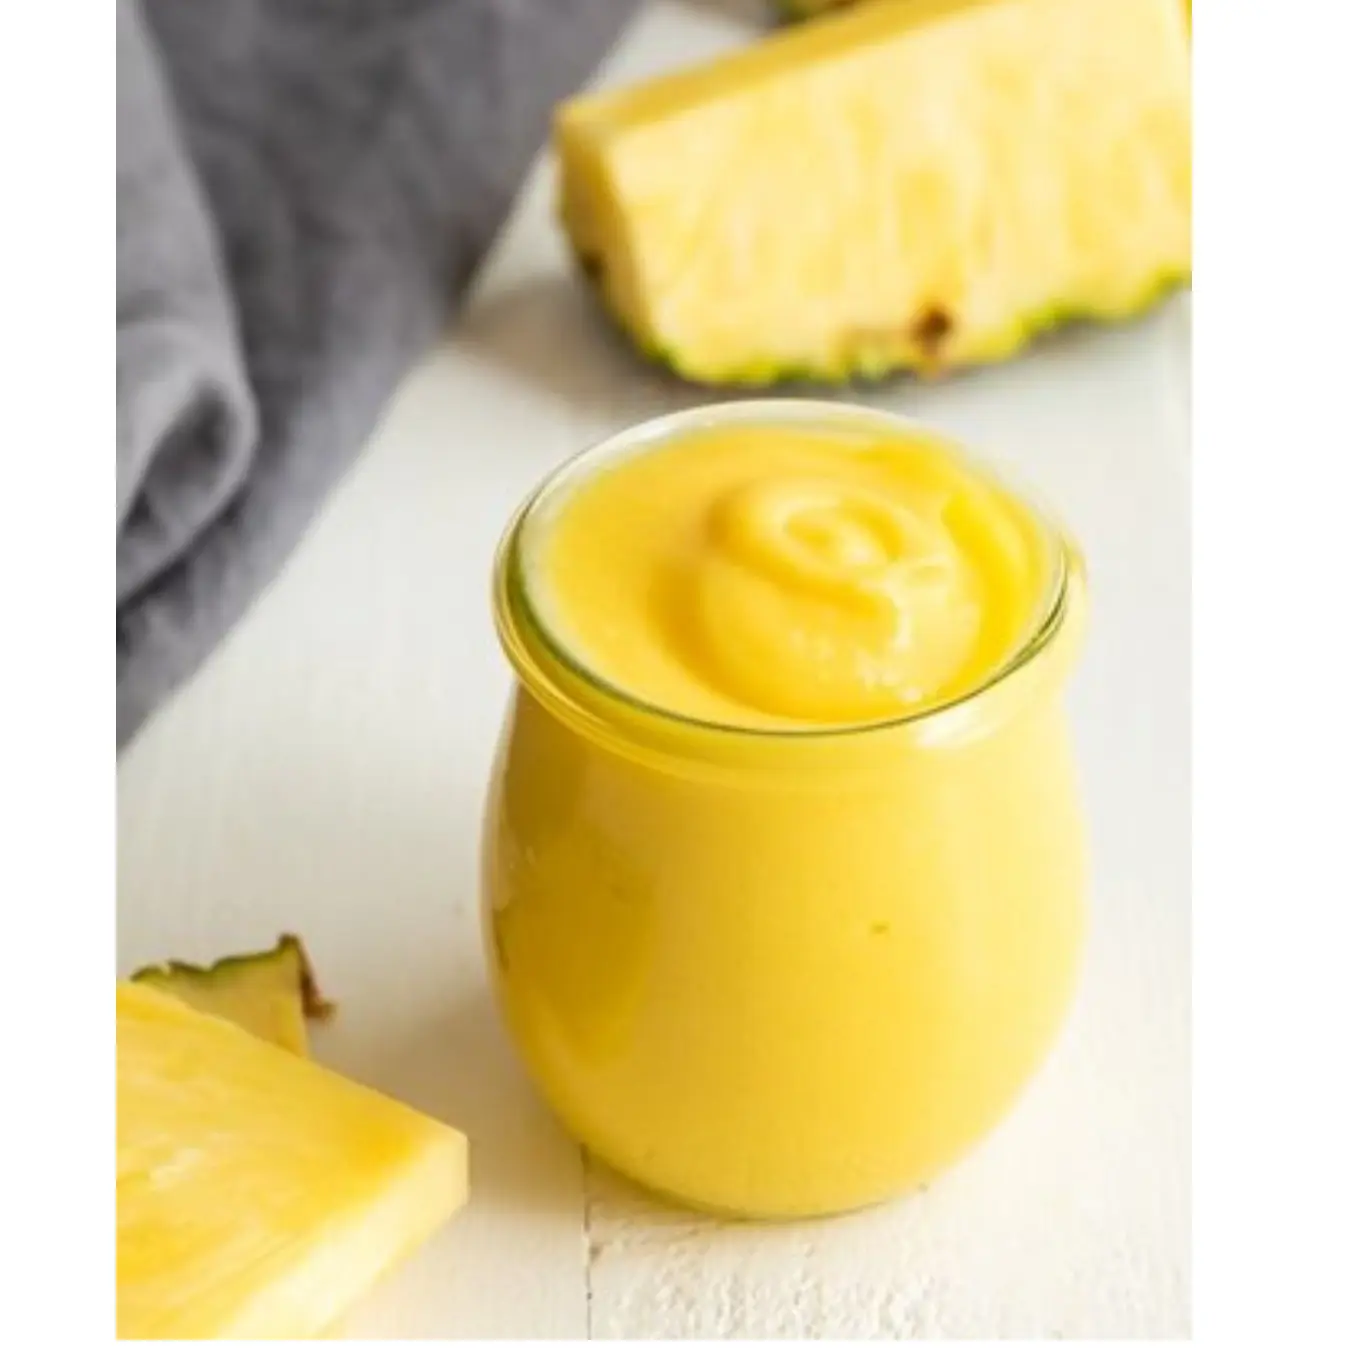 Grado superiore 24 mesi Shell Life sterilizzato gusto dolce senza zucchero purea di ananas congelata origine dal Vietnam